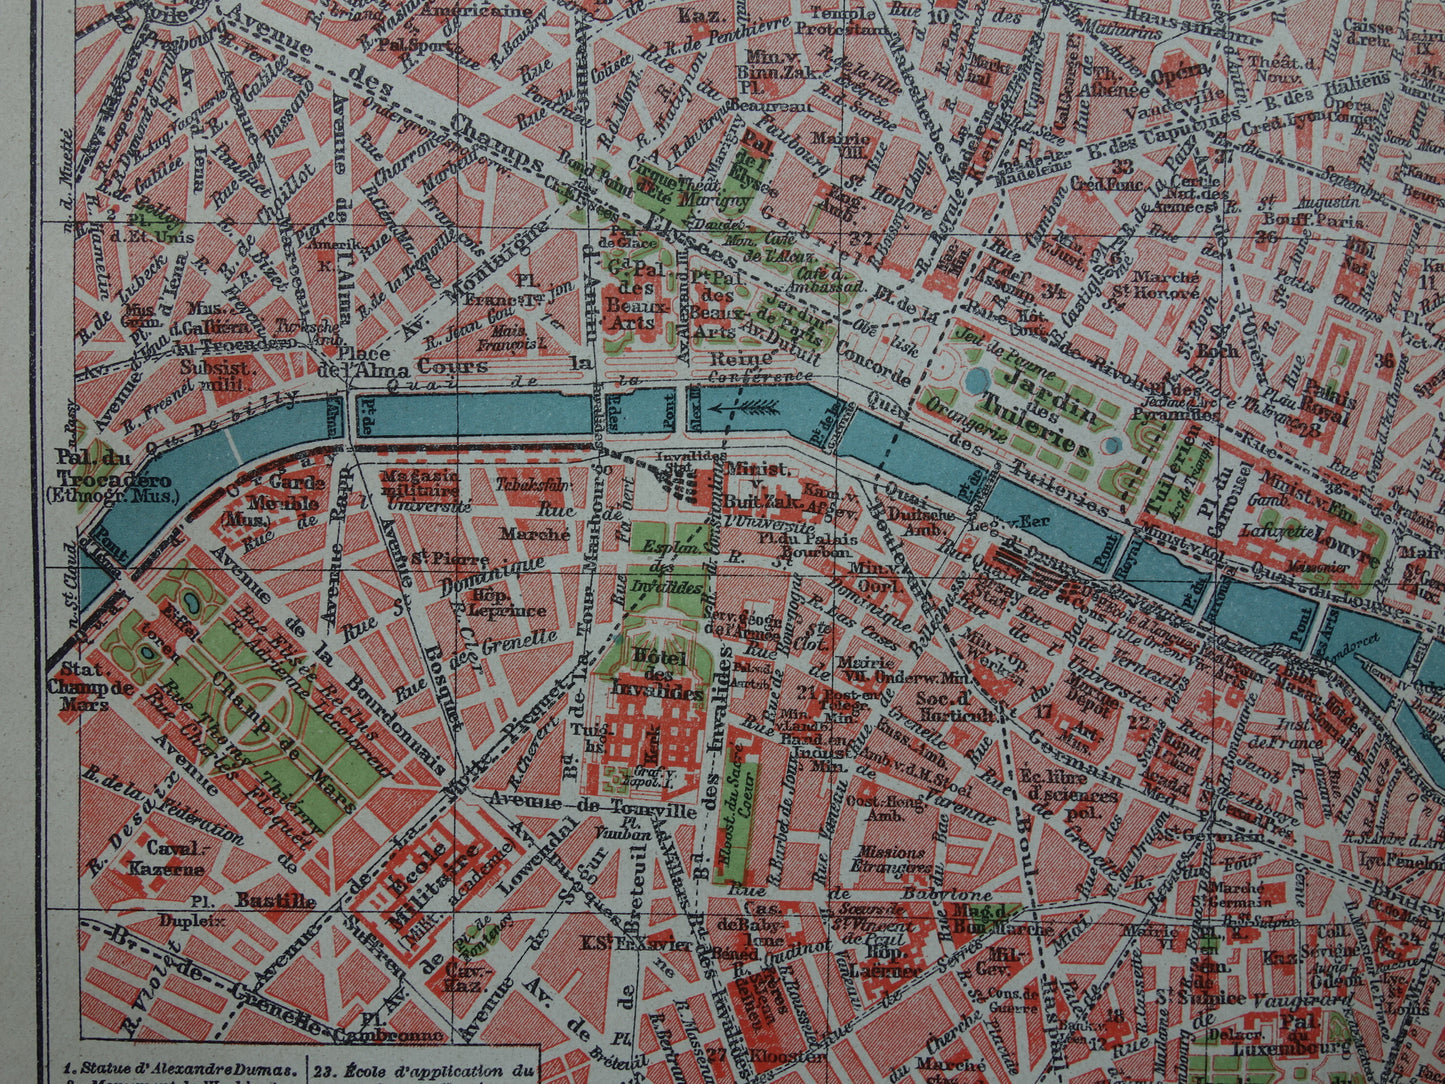 PARIJS oude plattegrond Originele antieke Nederlandse kaart van Parijs Frankrijk uit 1921 vintage historische kaarten